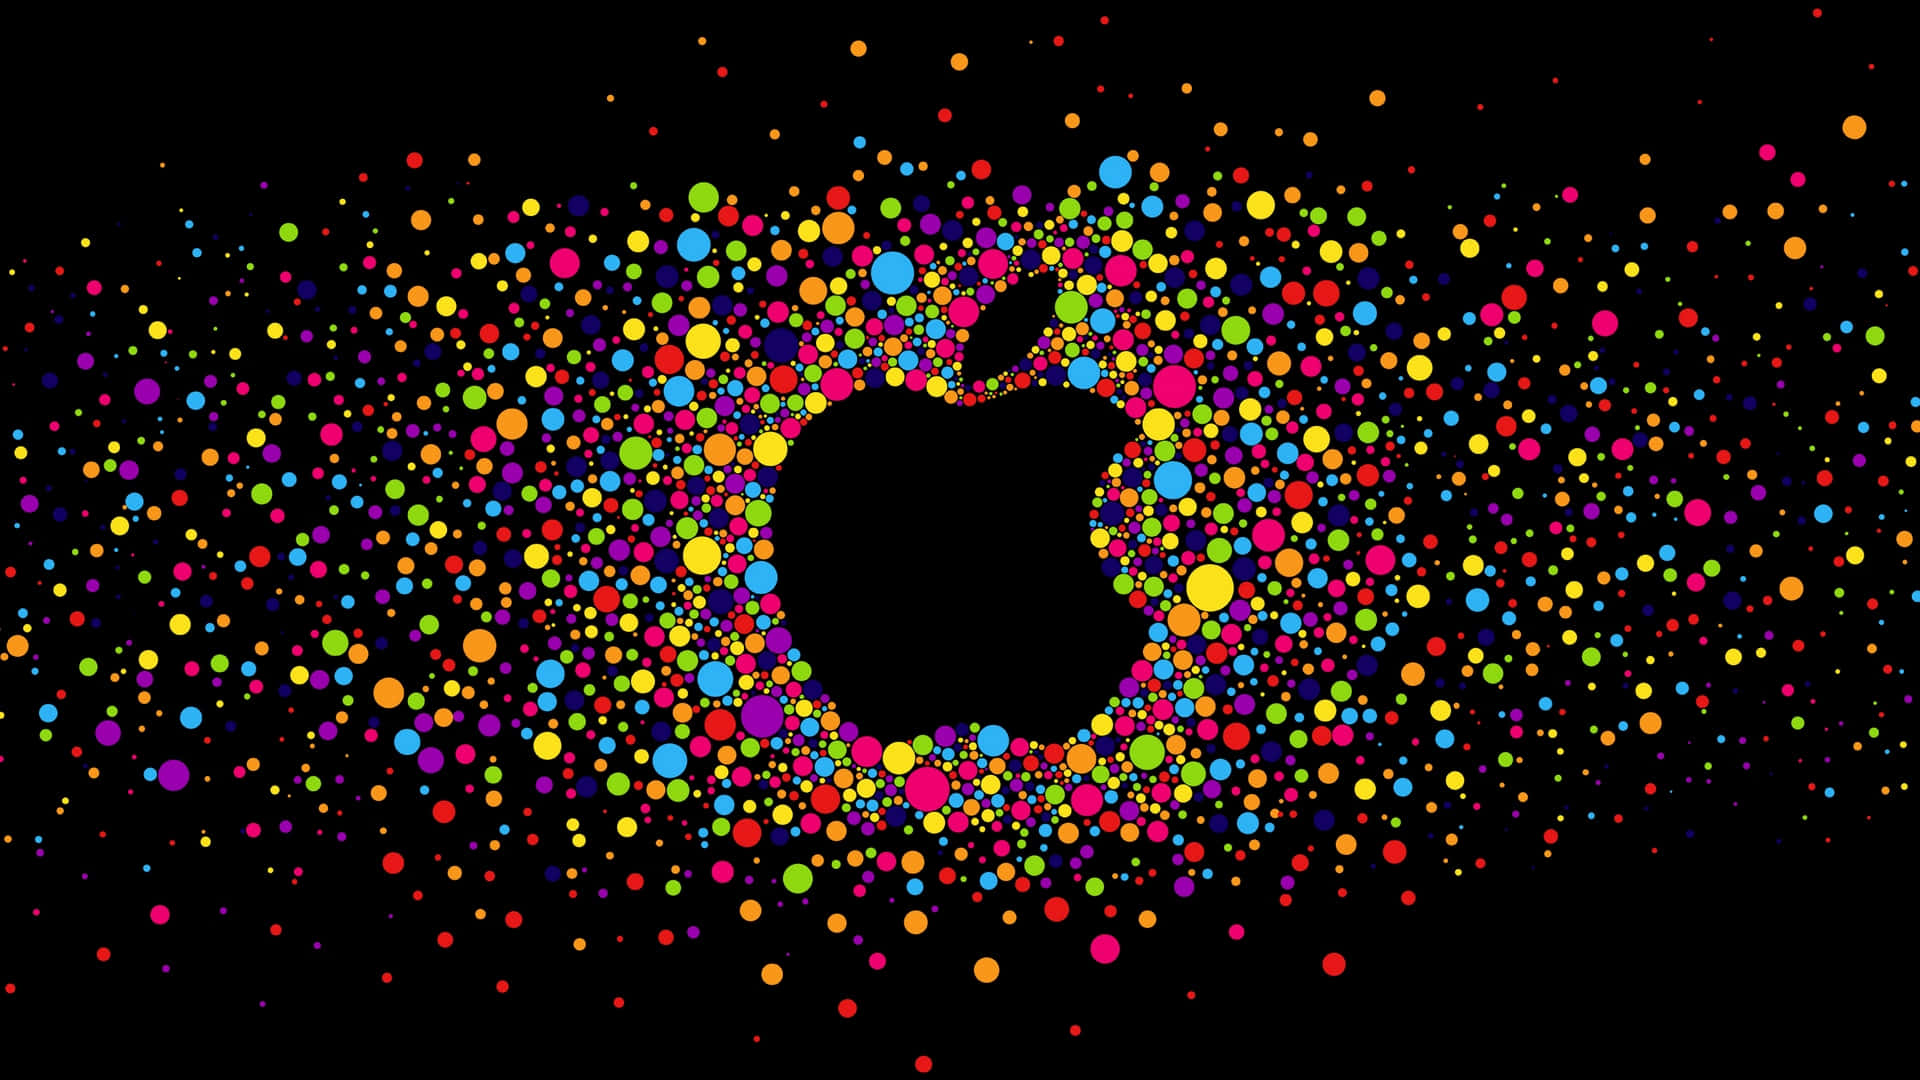 Logotipode Apple Negro Con Círculos Coloridos. Fondo de pantalla